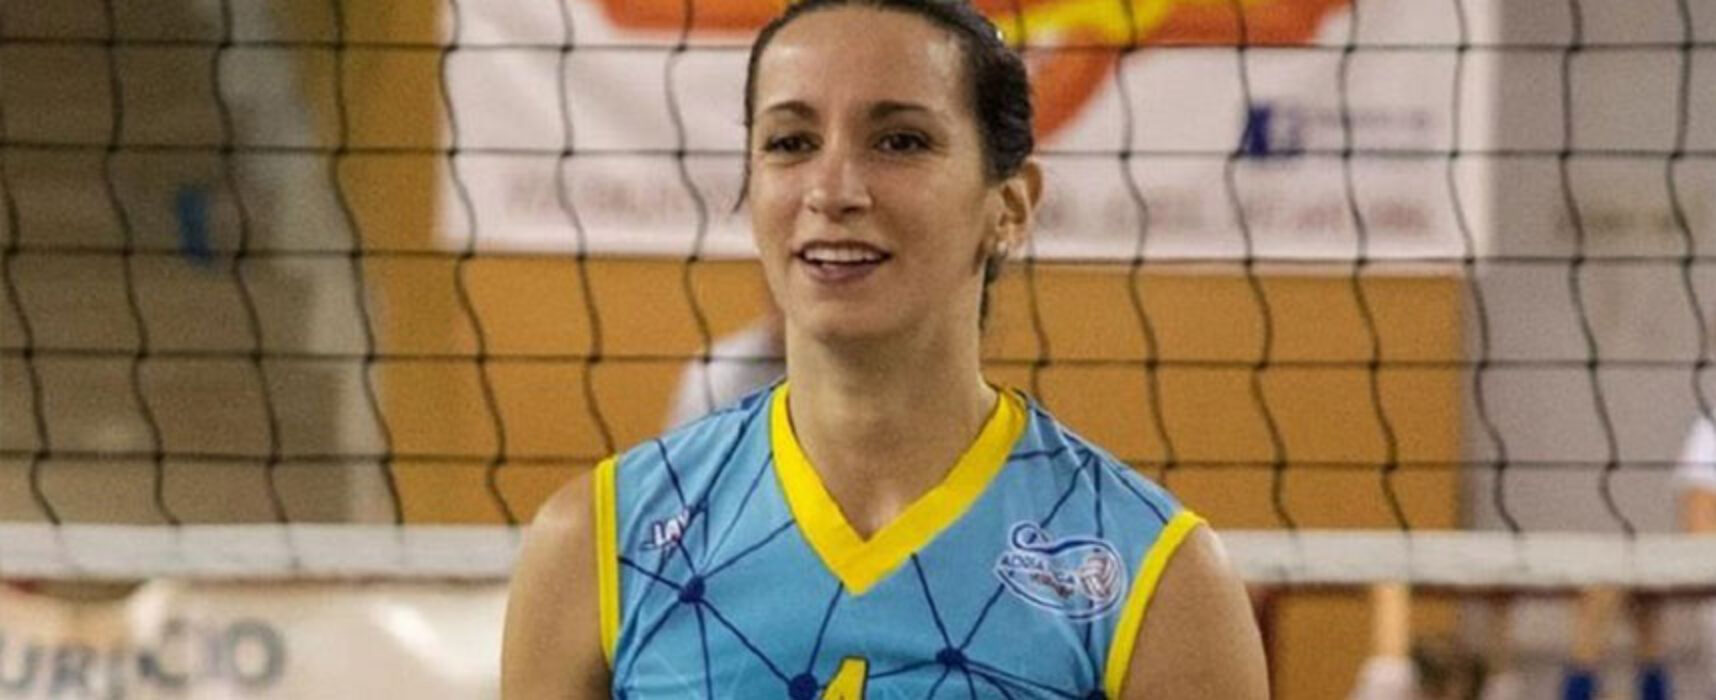 Nadia Volpe volto nuovo in casa Star Volley: “Elettrizzata all’idea di iniziare”